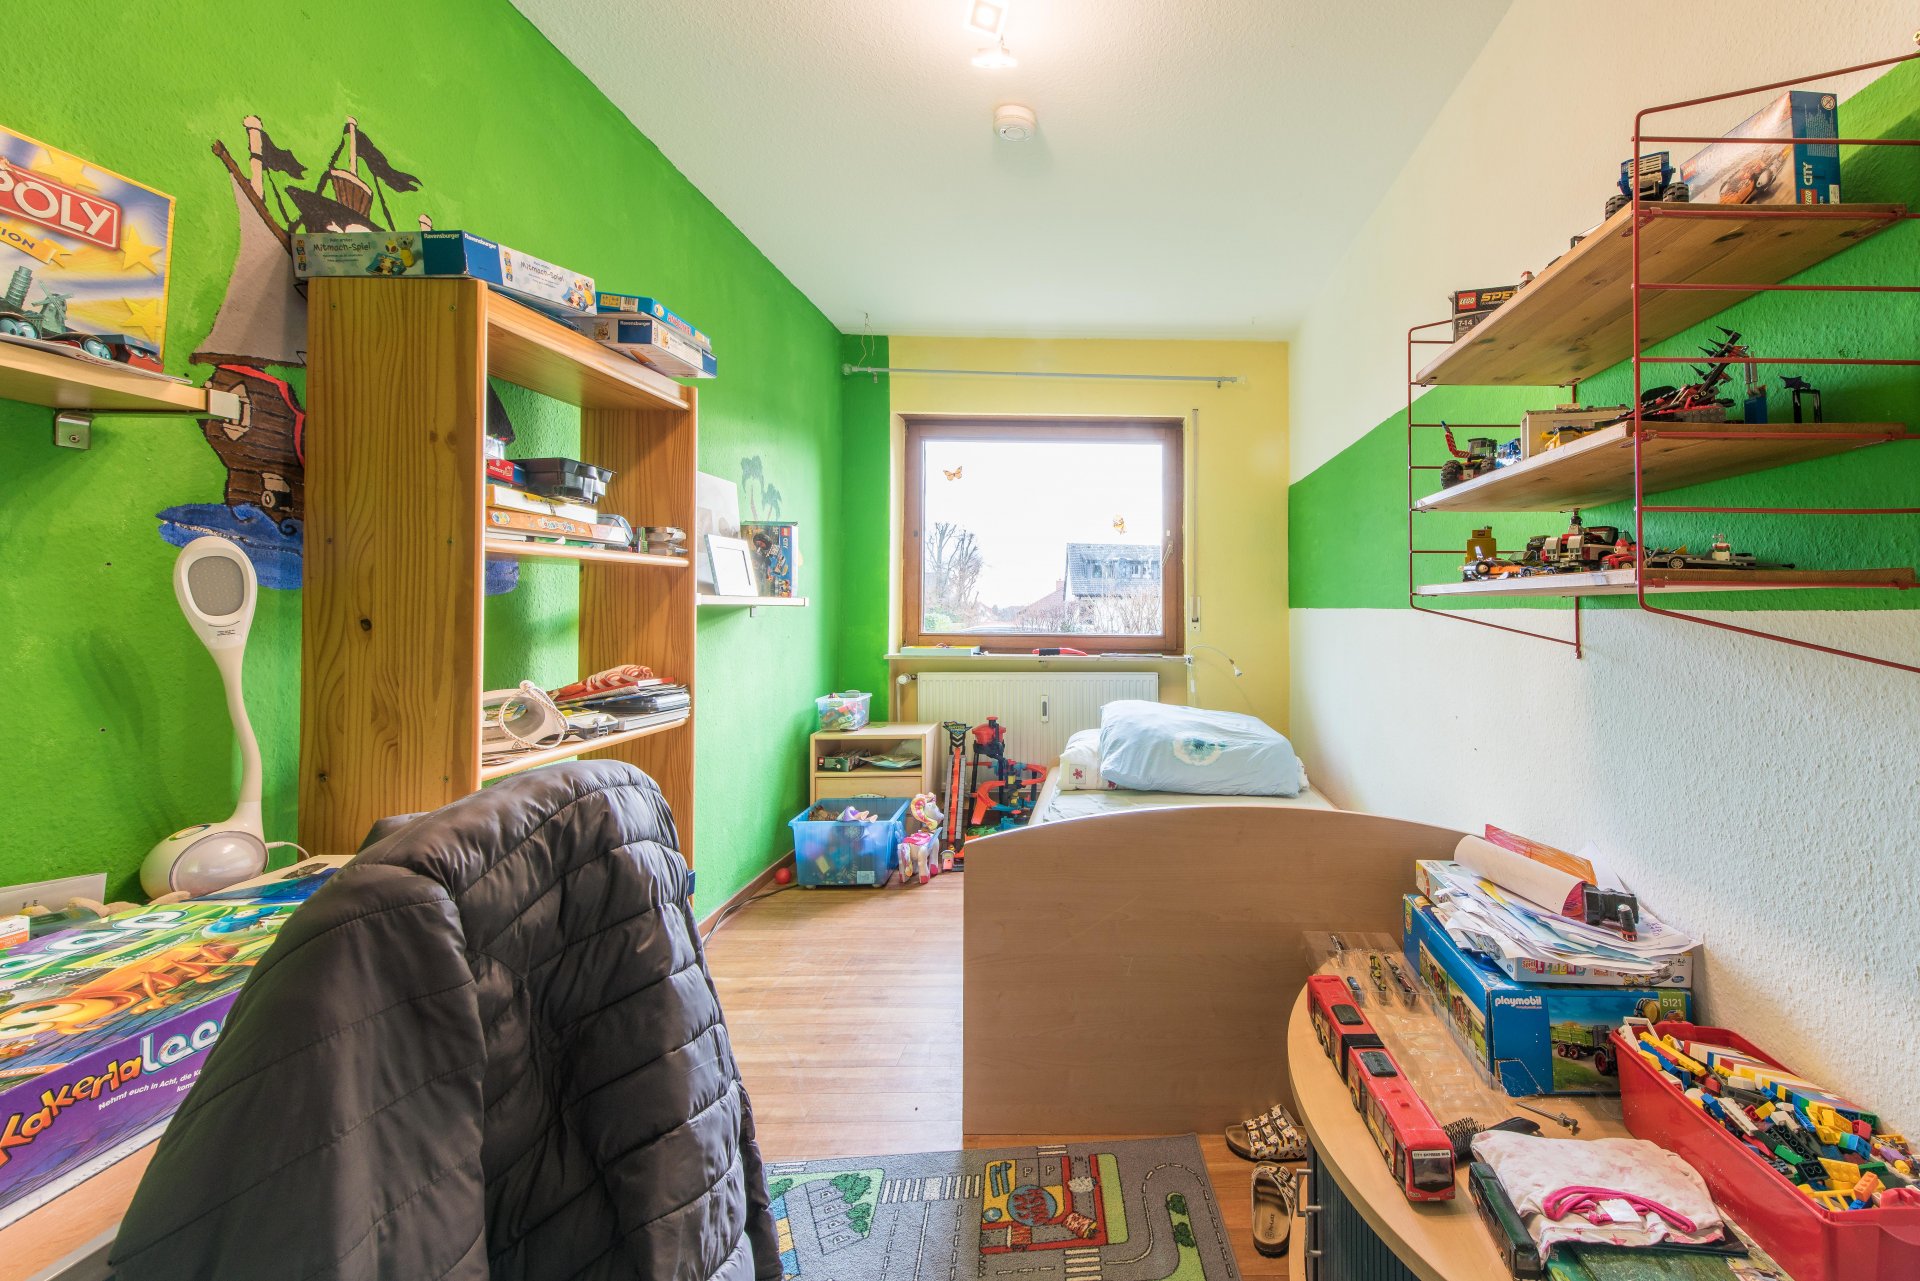 Kinderzimmer, ein Traum in Grün - Oliver Reifferscheid - Immobilienmakler Darmstadt